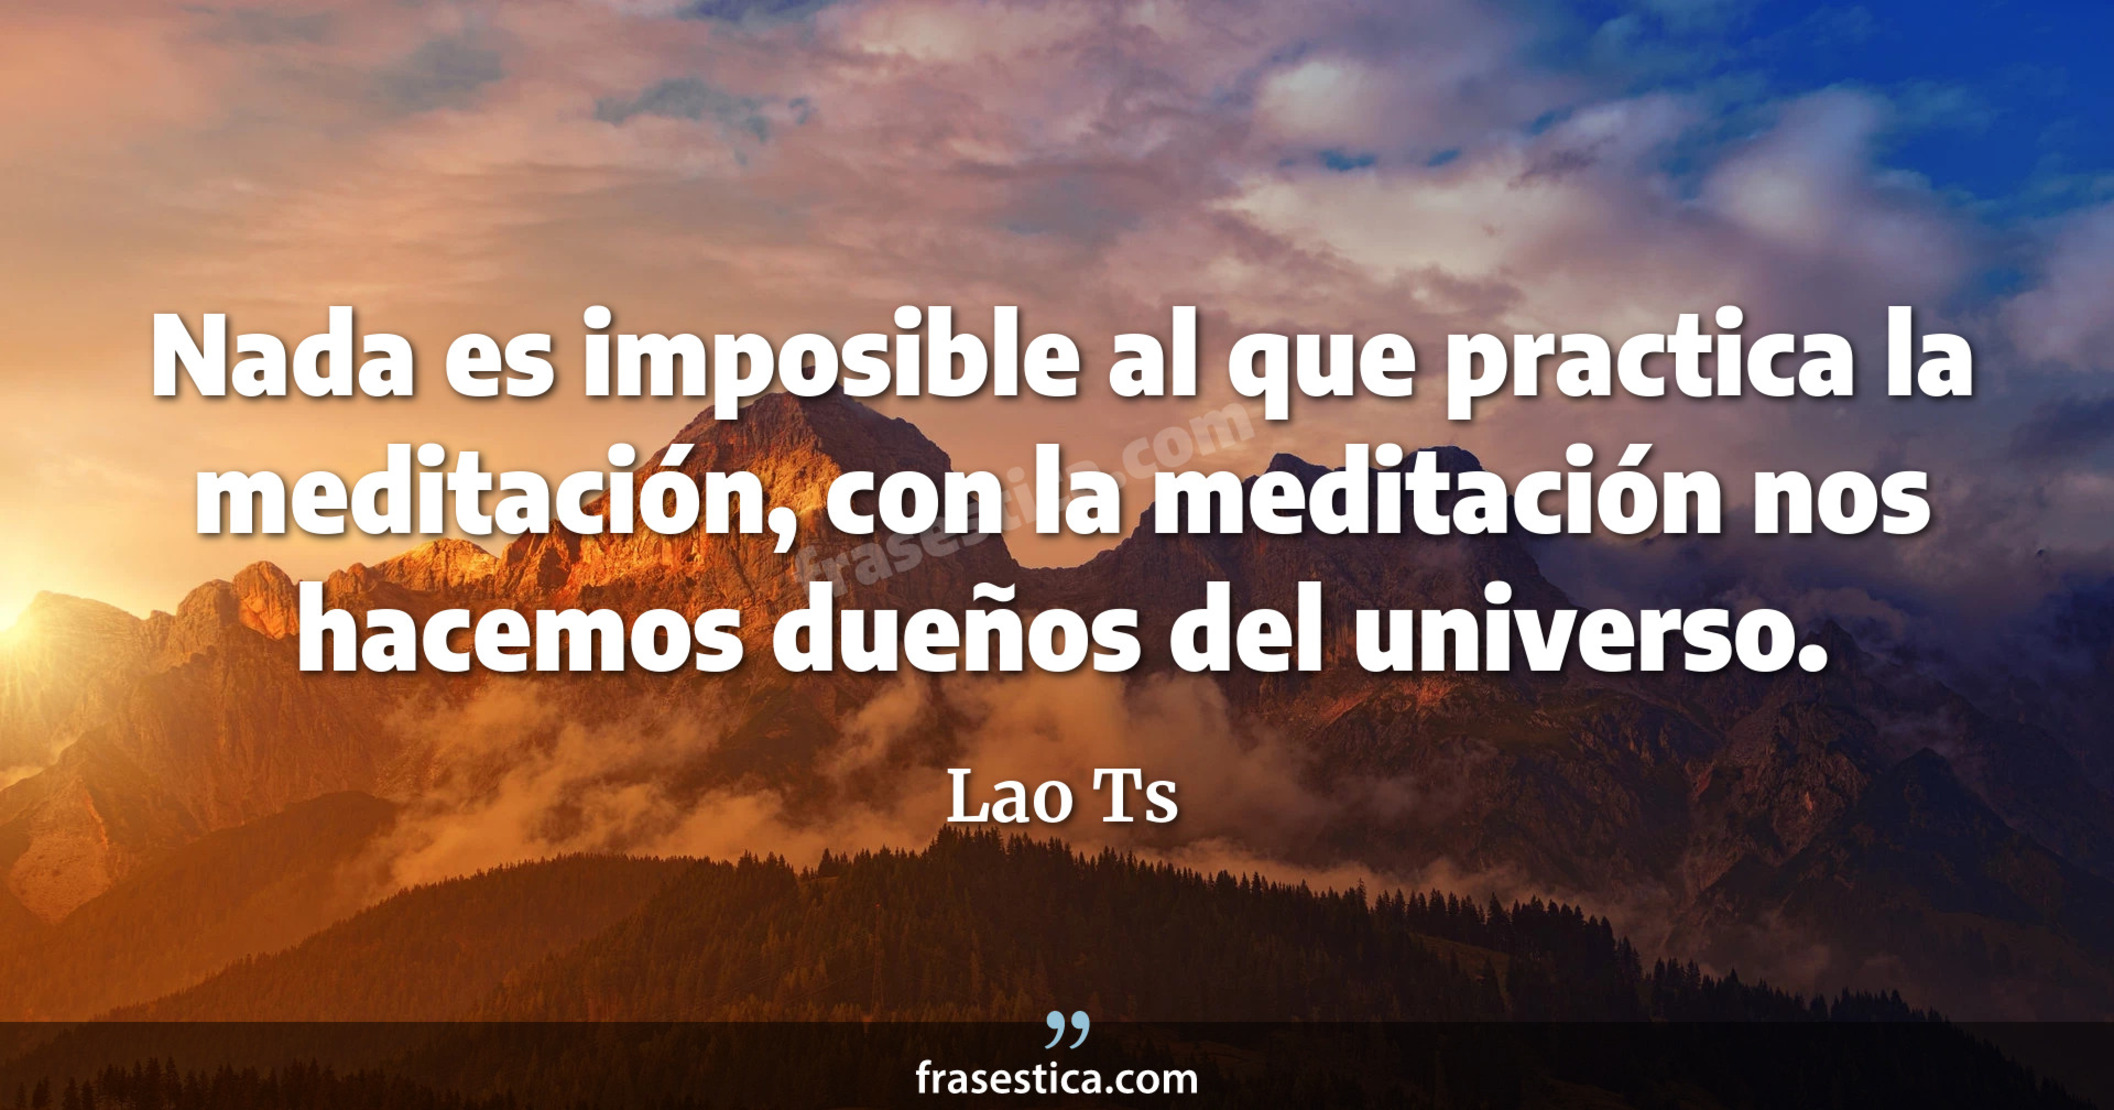 Nada es imposible al que practica la meditación, con la meditación nos hacemos dueños del universo. - Lao Ts